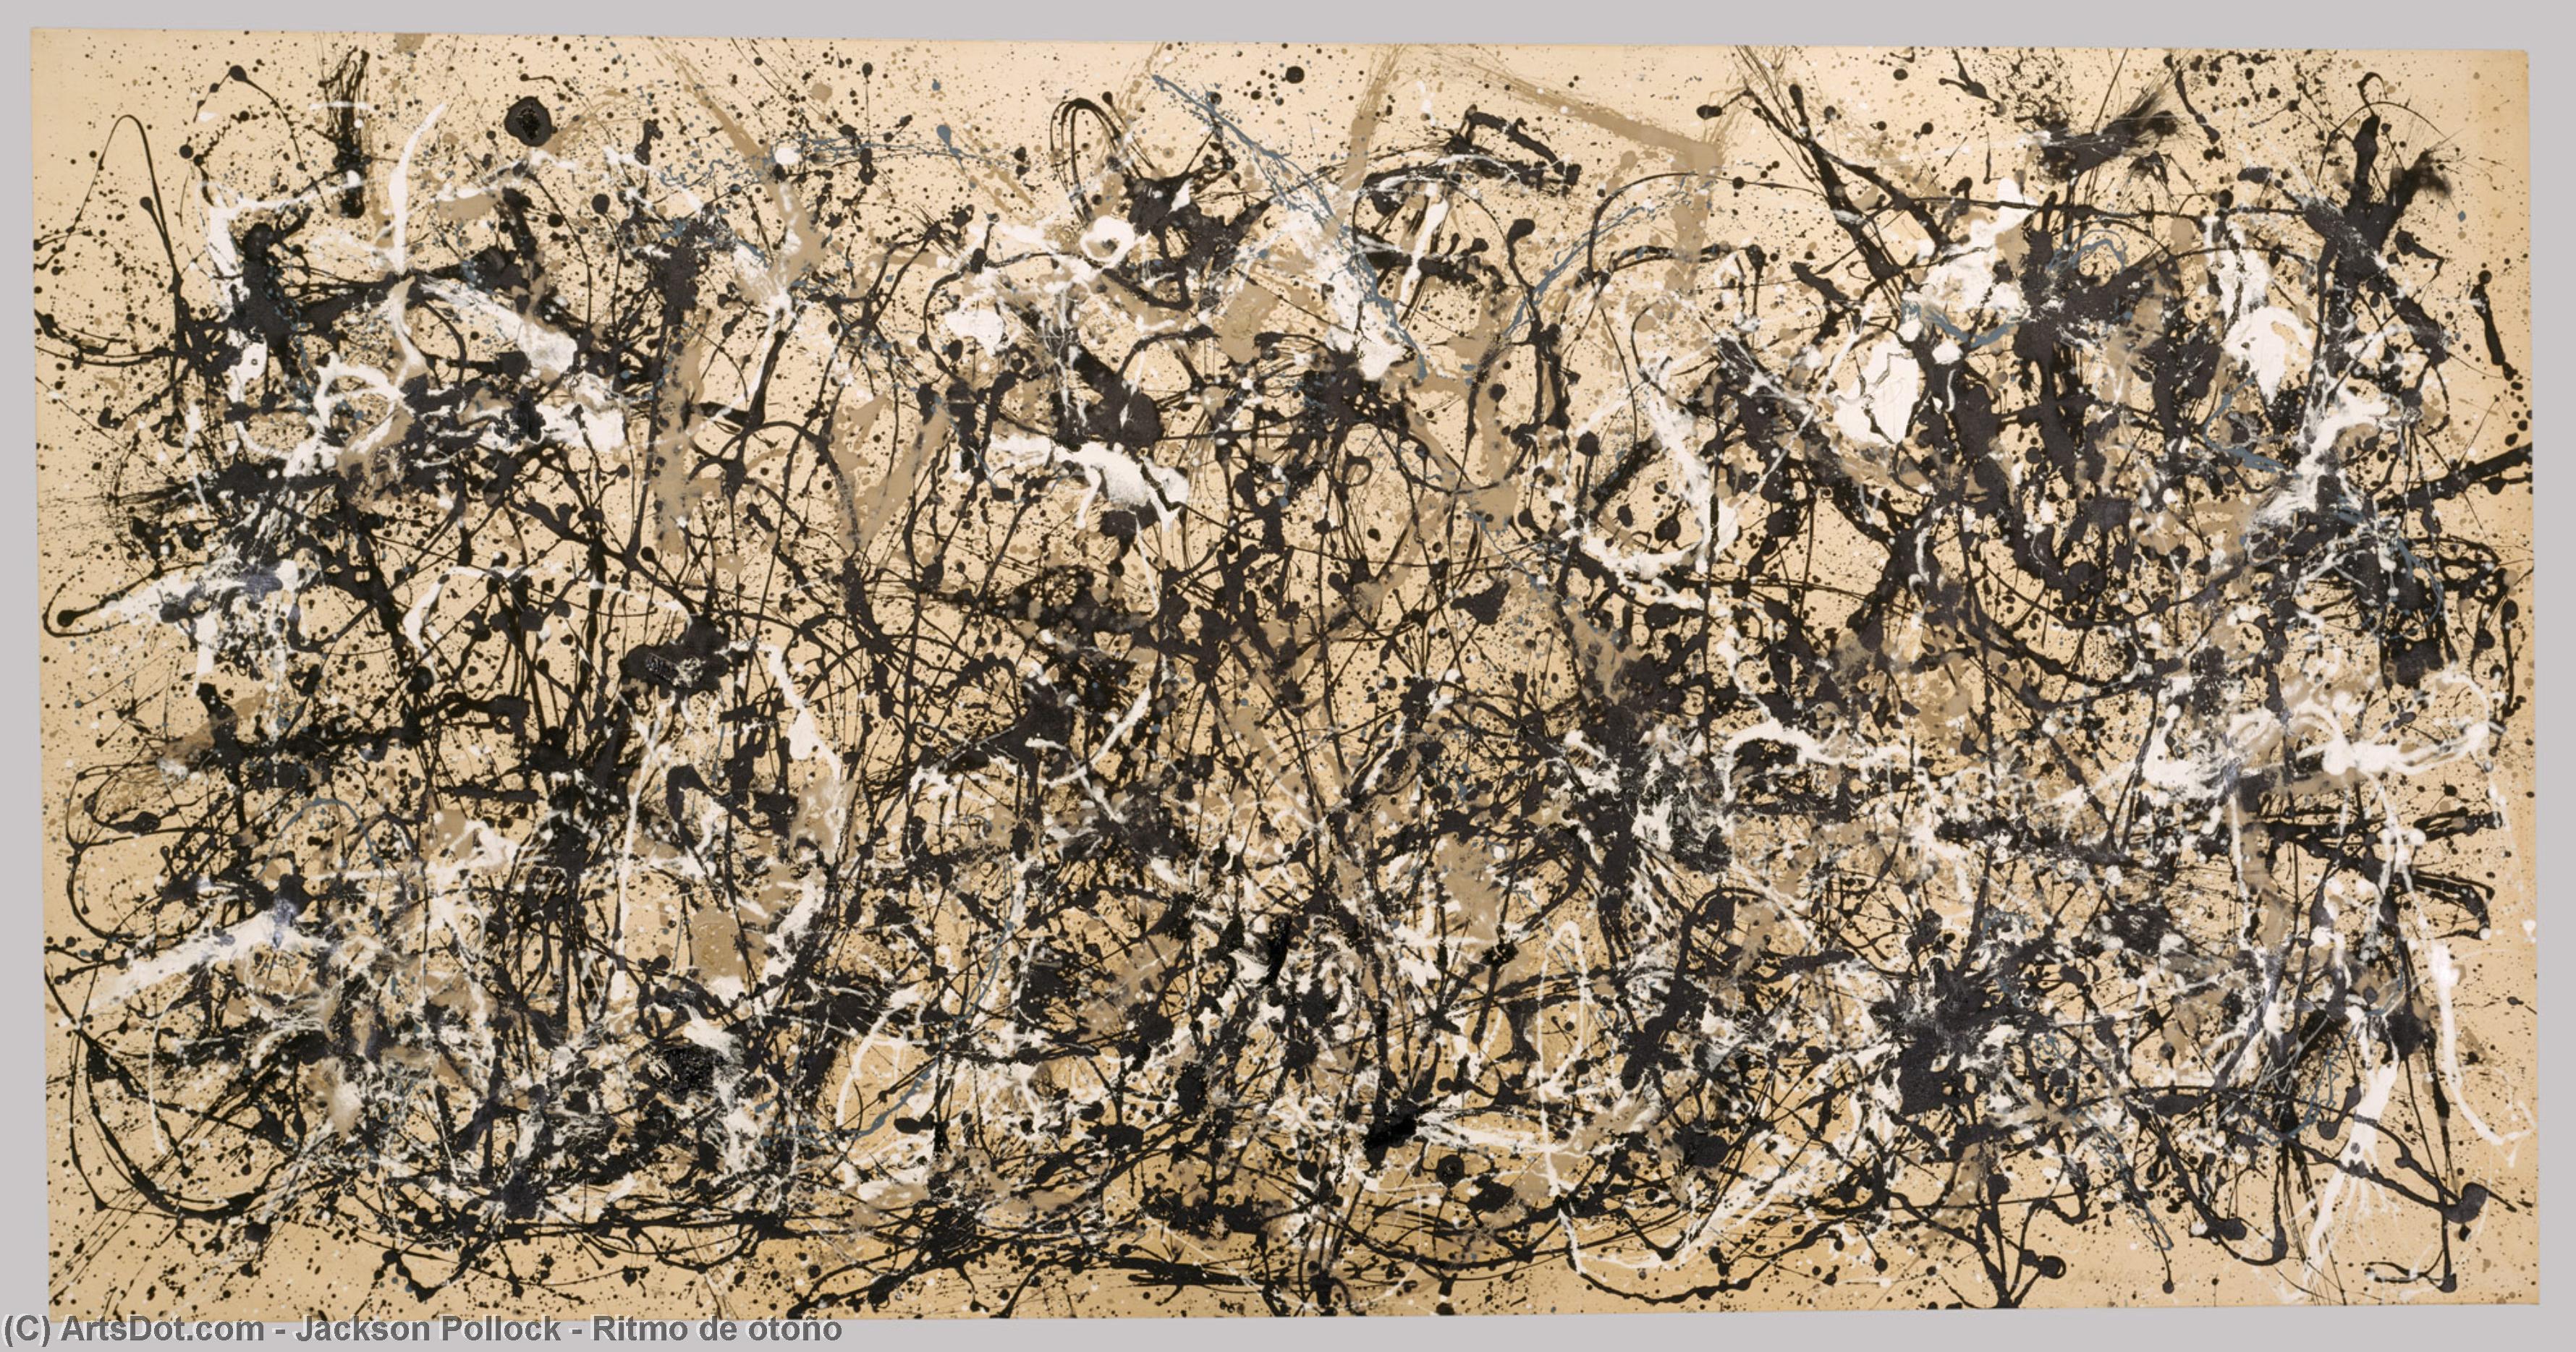 WikiOO.org - Enciklopedija likovnih umjetnosti - Slikarstvo, umjetnička djela Jackson Pollock - Ritmo de otoño